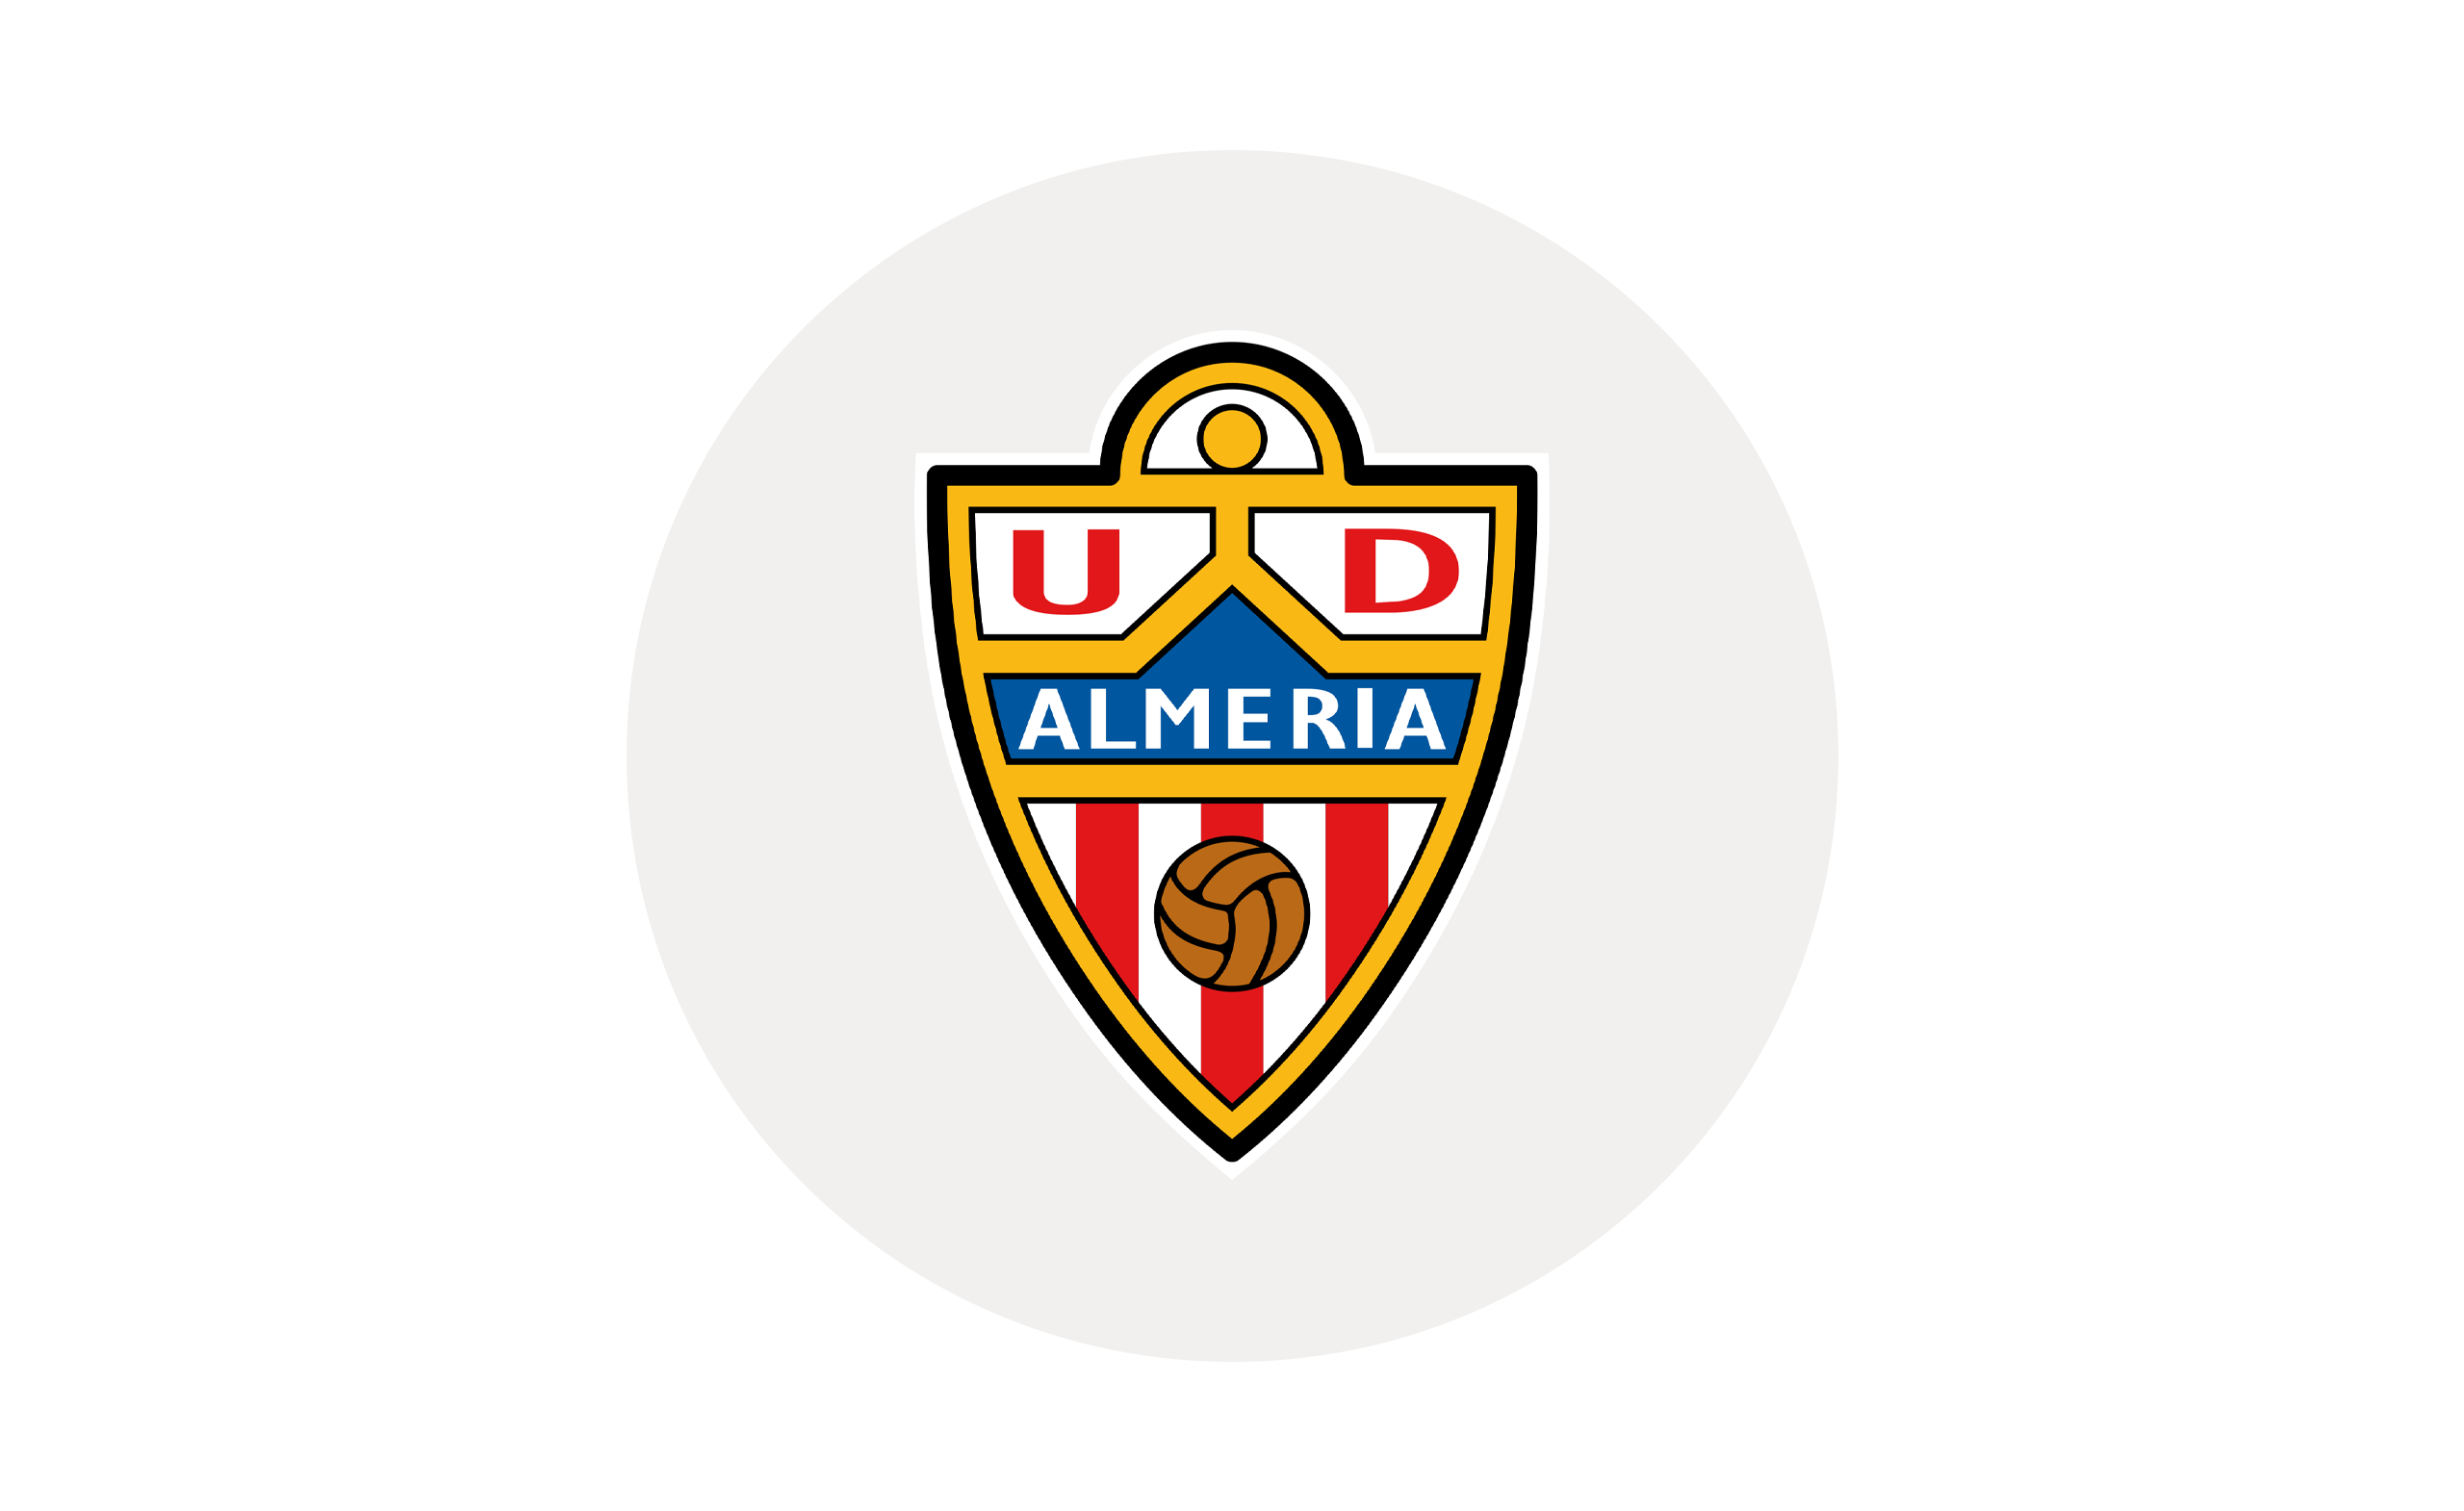 Almeria